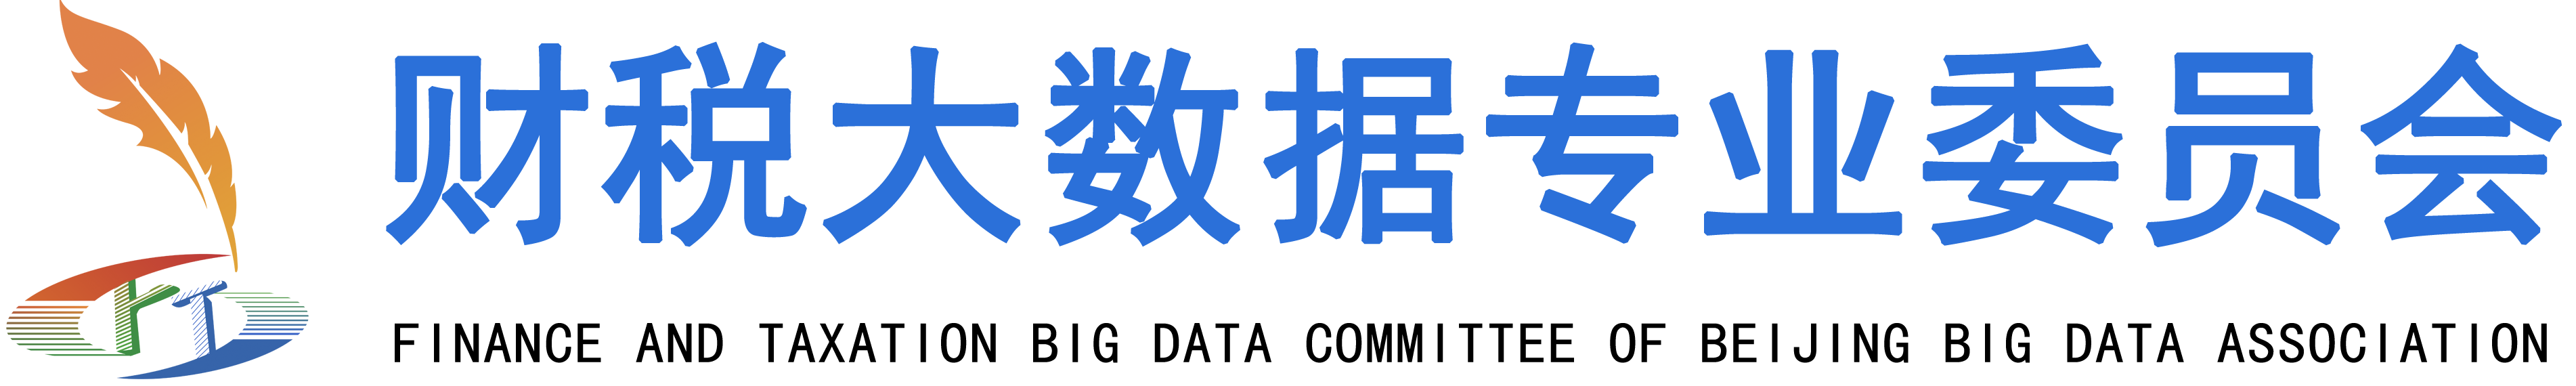 北京市大数据协会财税大数据专业委员会